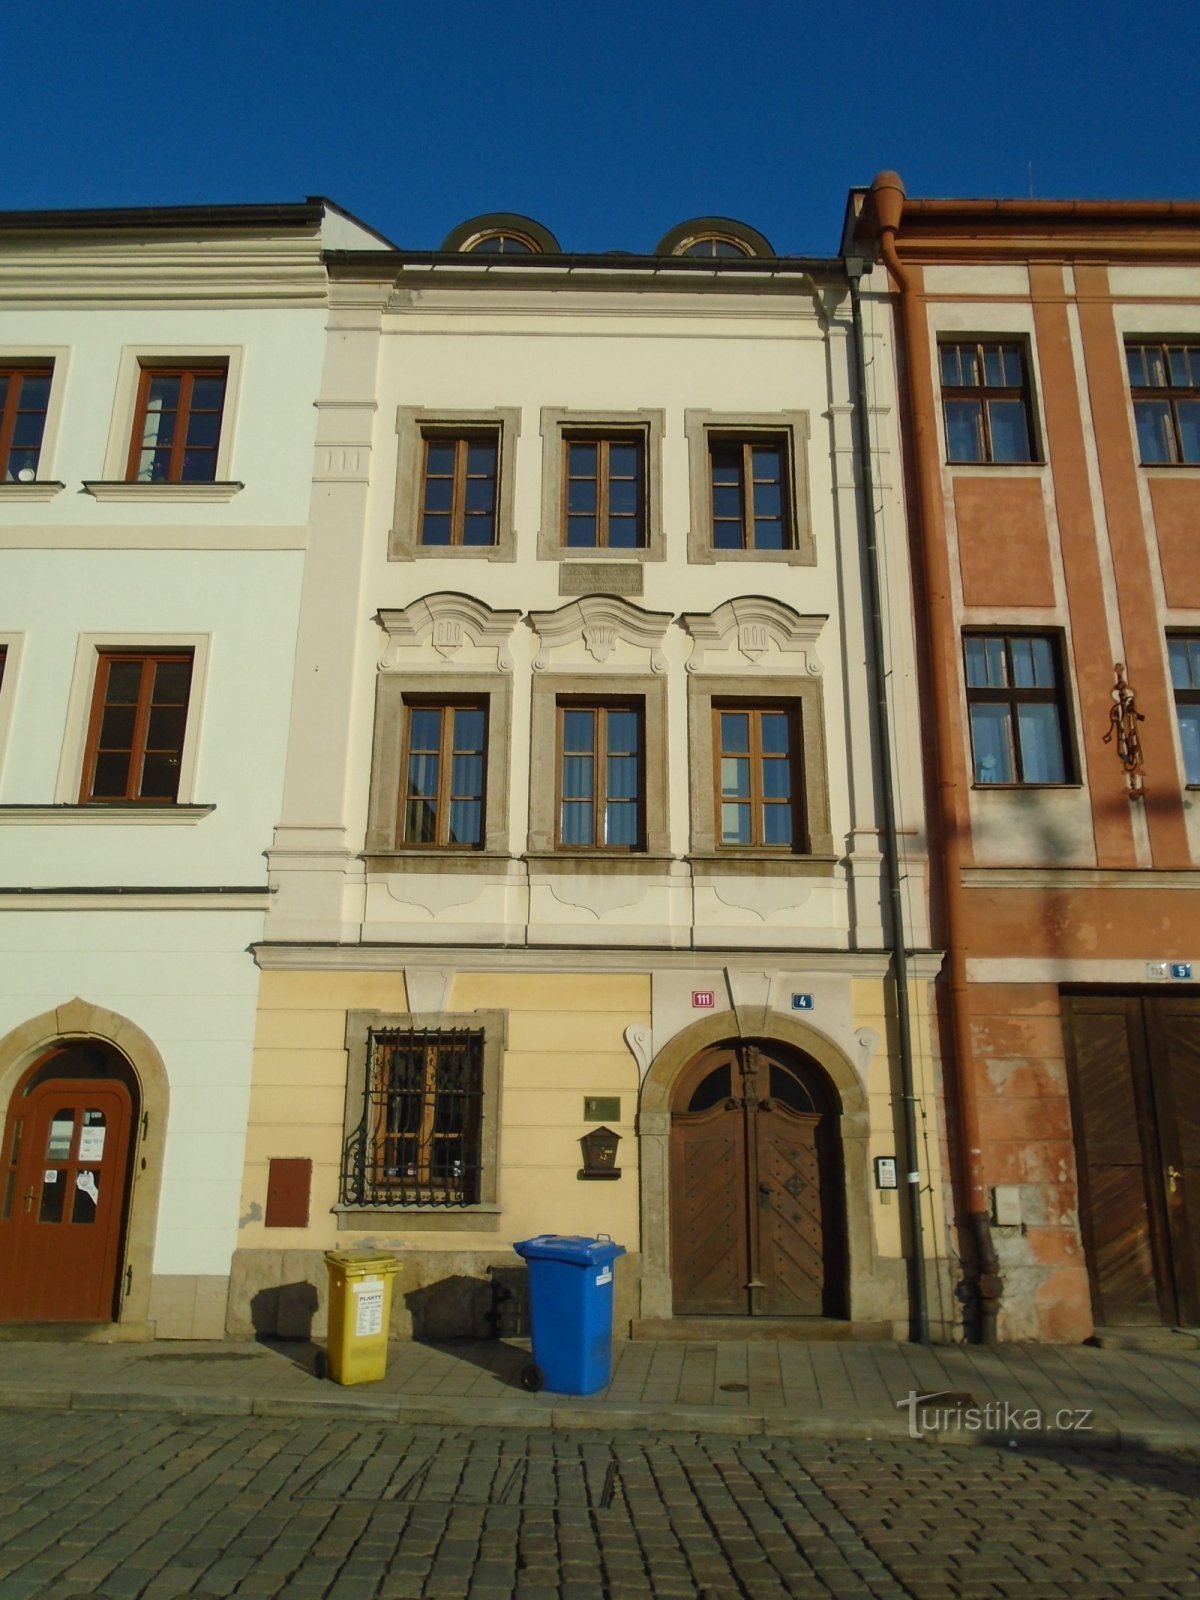 Malé náměstí n.111 (Hradec Králové, 30.1.2019 aprile XNUMX)